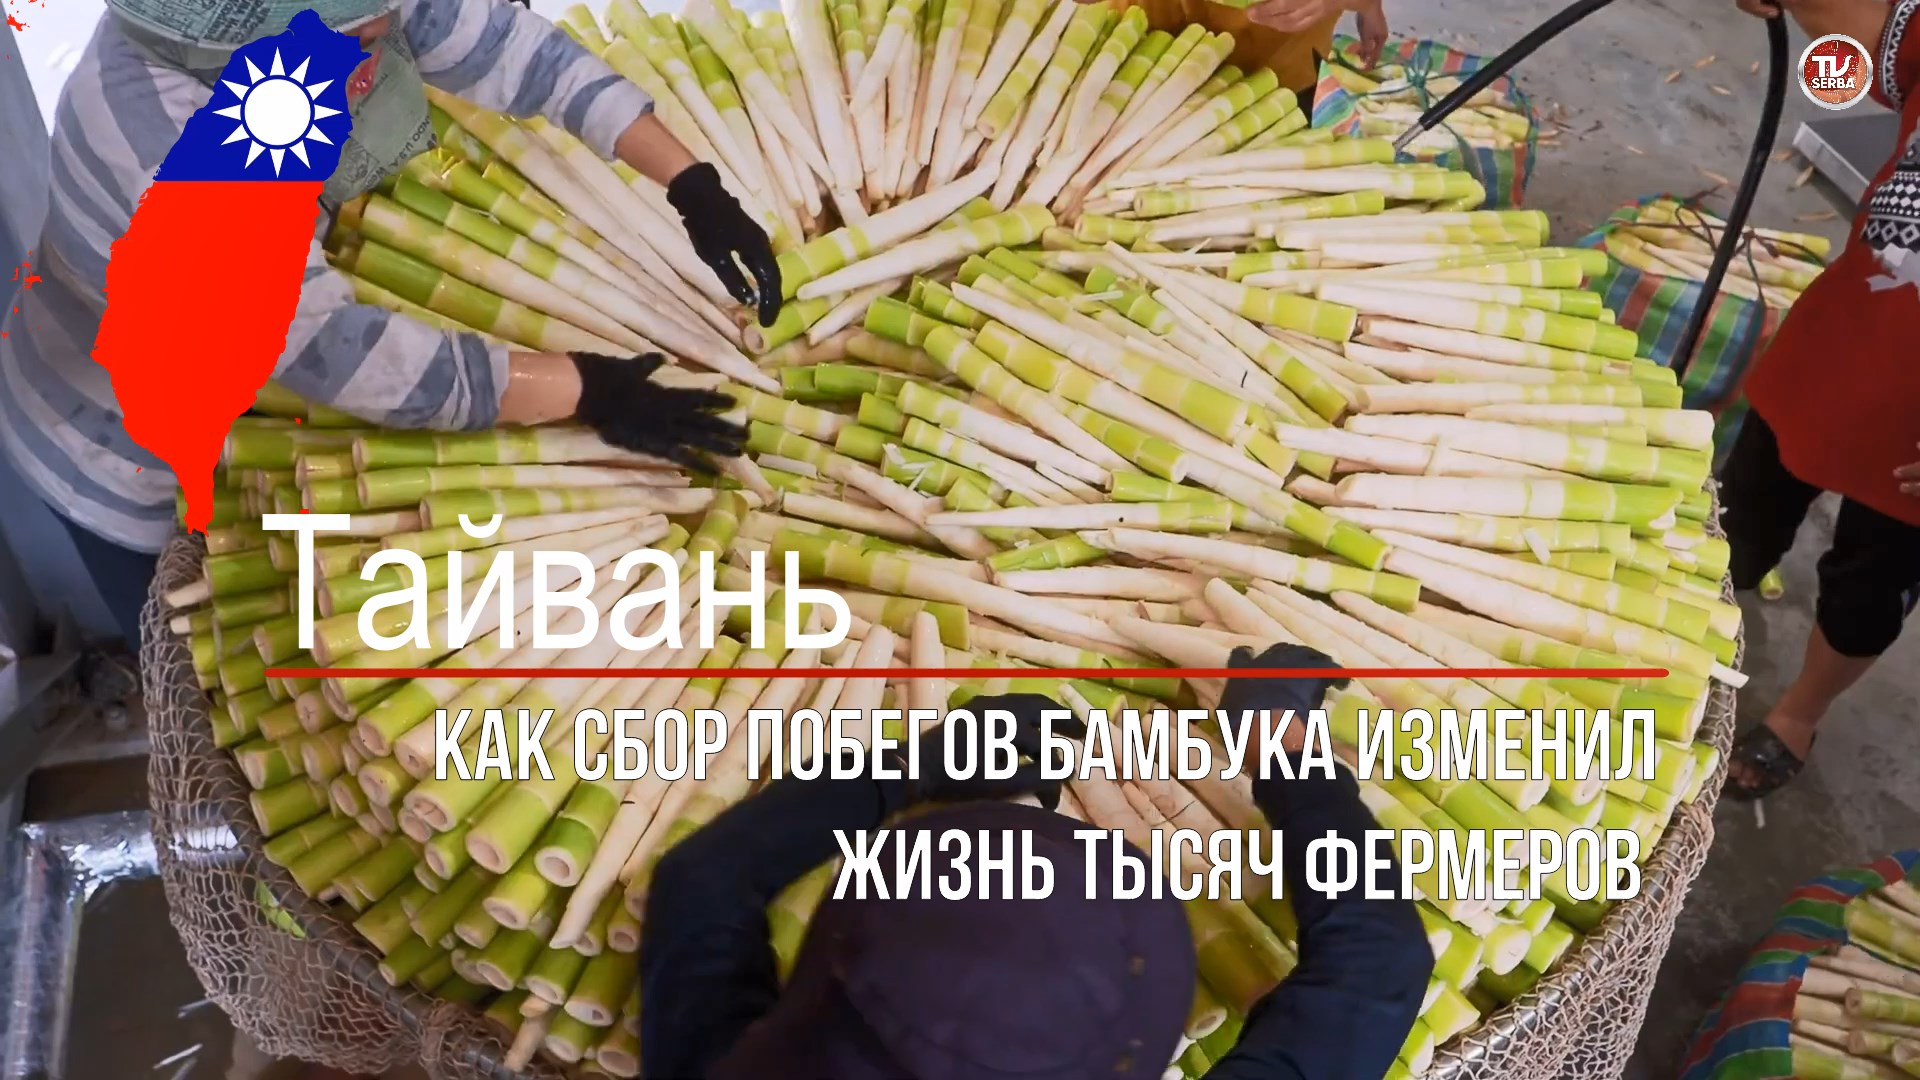 Бамбук рецепт приготовления / Как сбор побегов бамбука изменил жизнь тысяч фермеров / СербаТВ 🔴